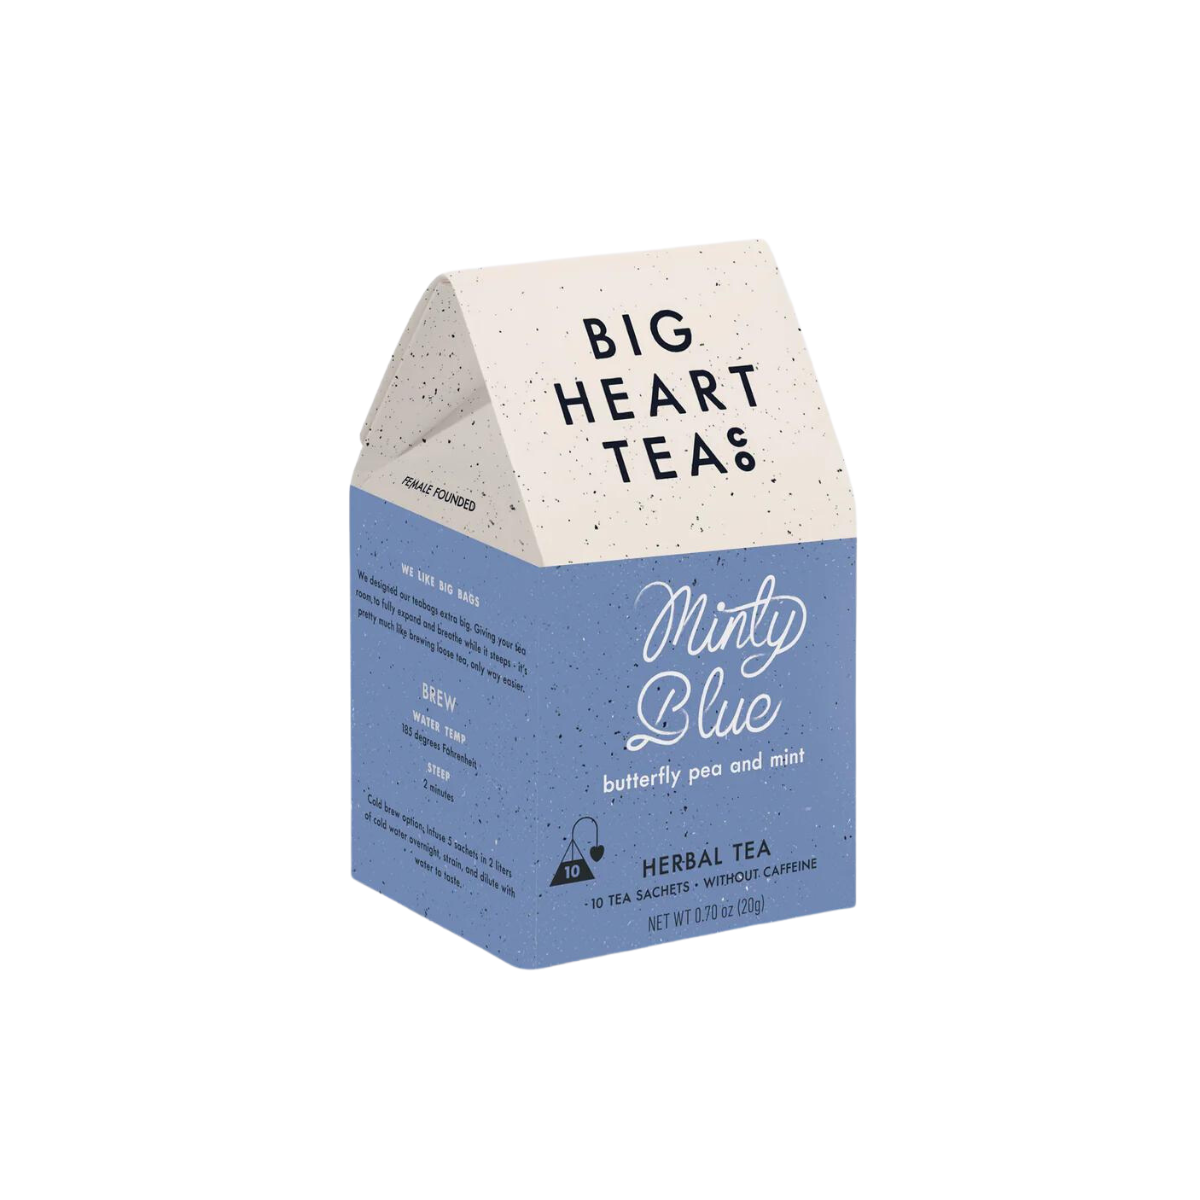 Big Heart Tea Co.- Minty Blue